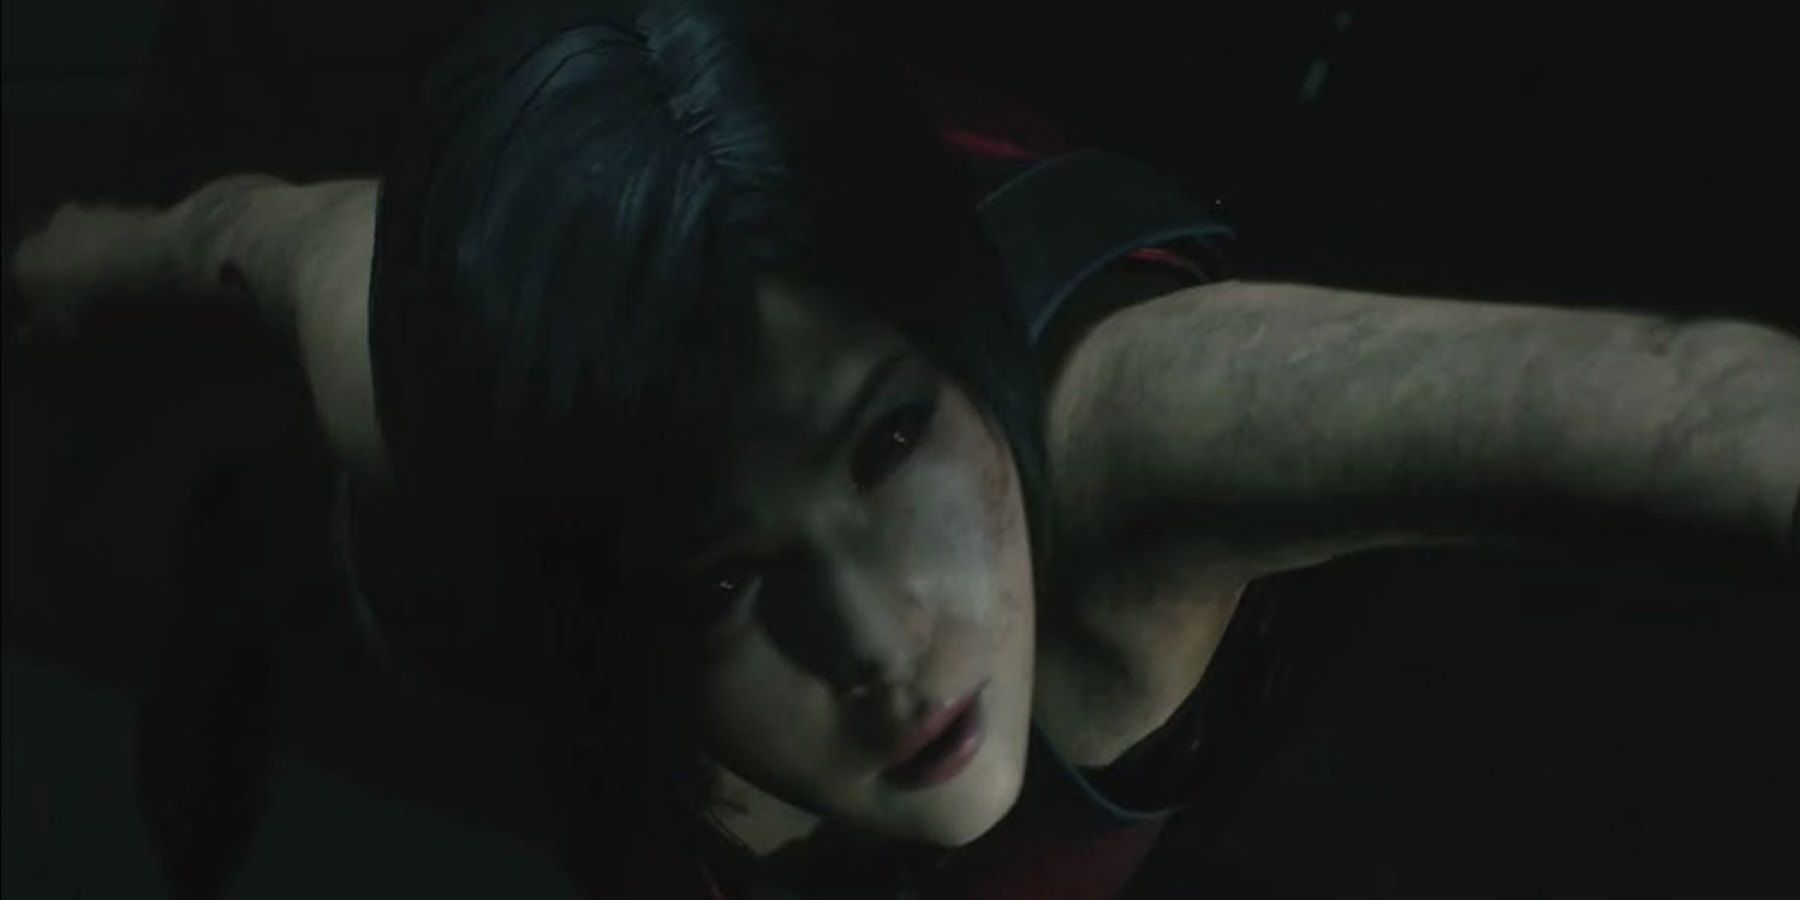 Ada before she falls in Resident Evil 2